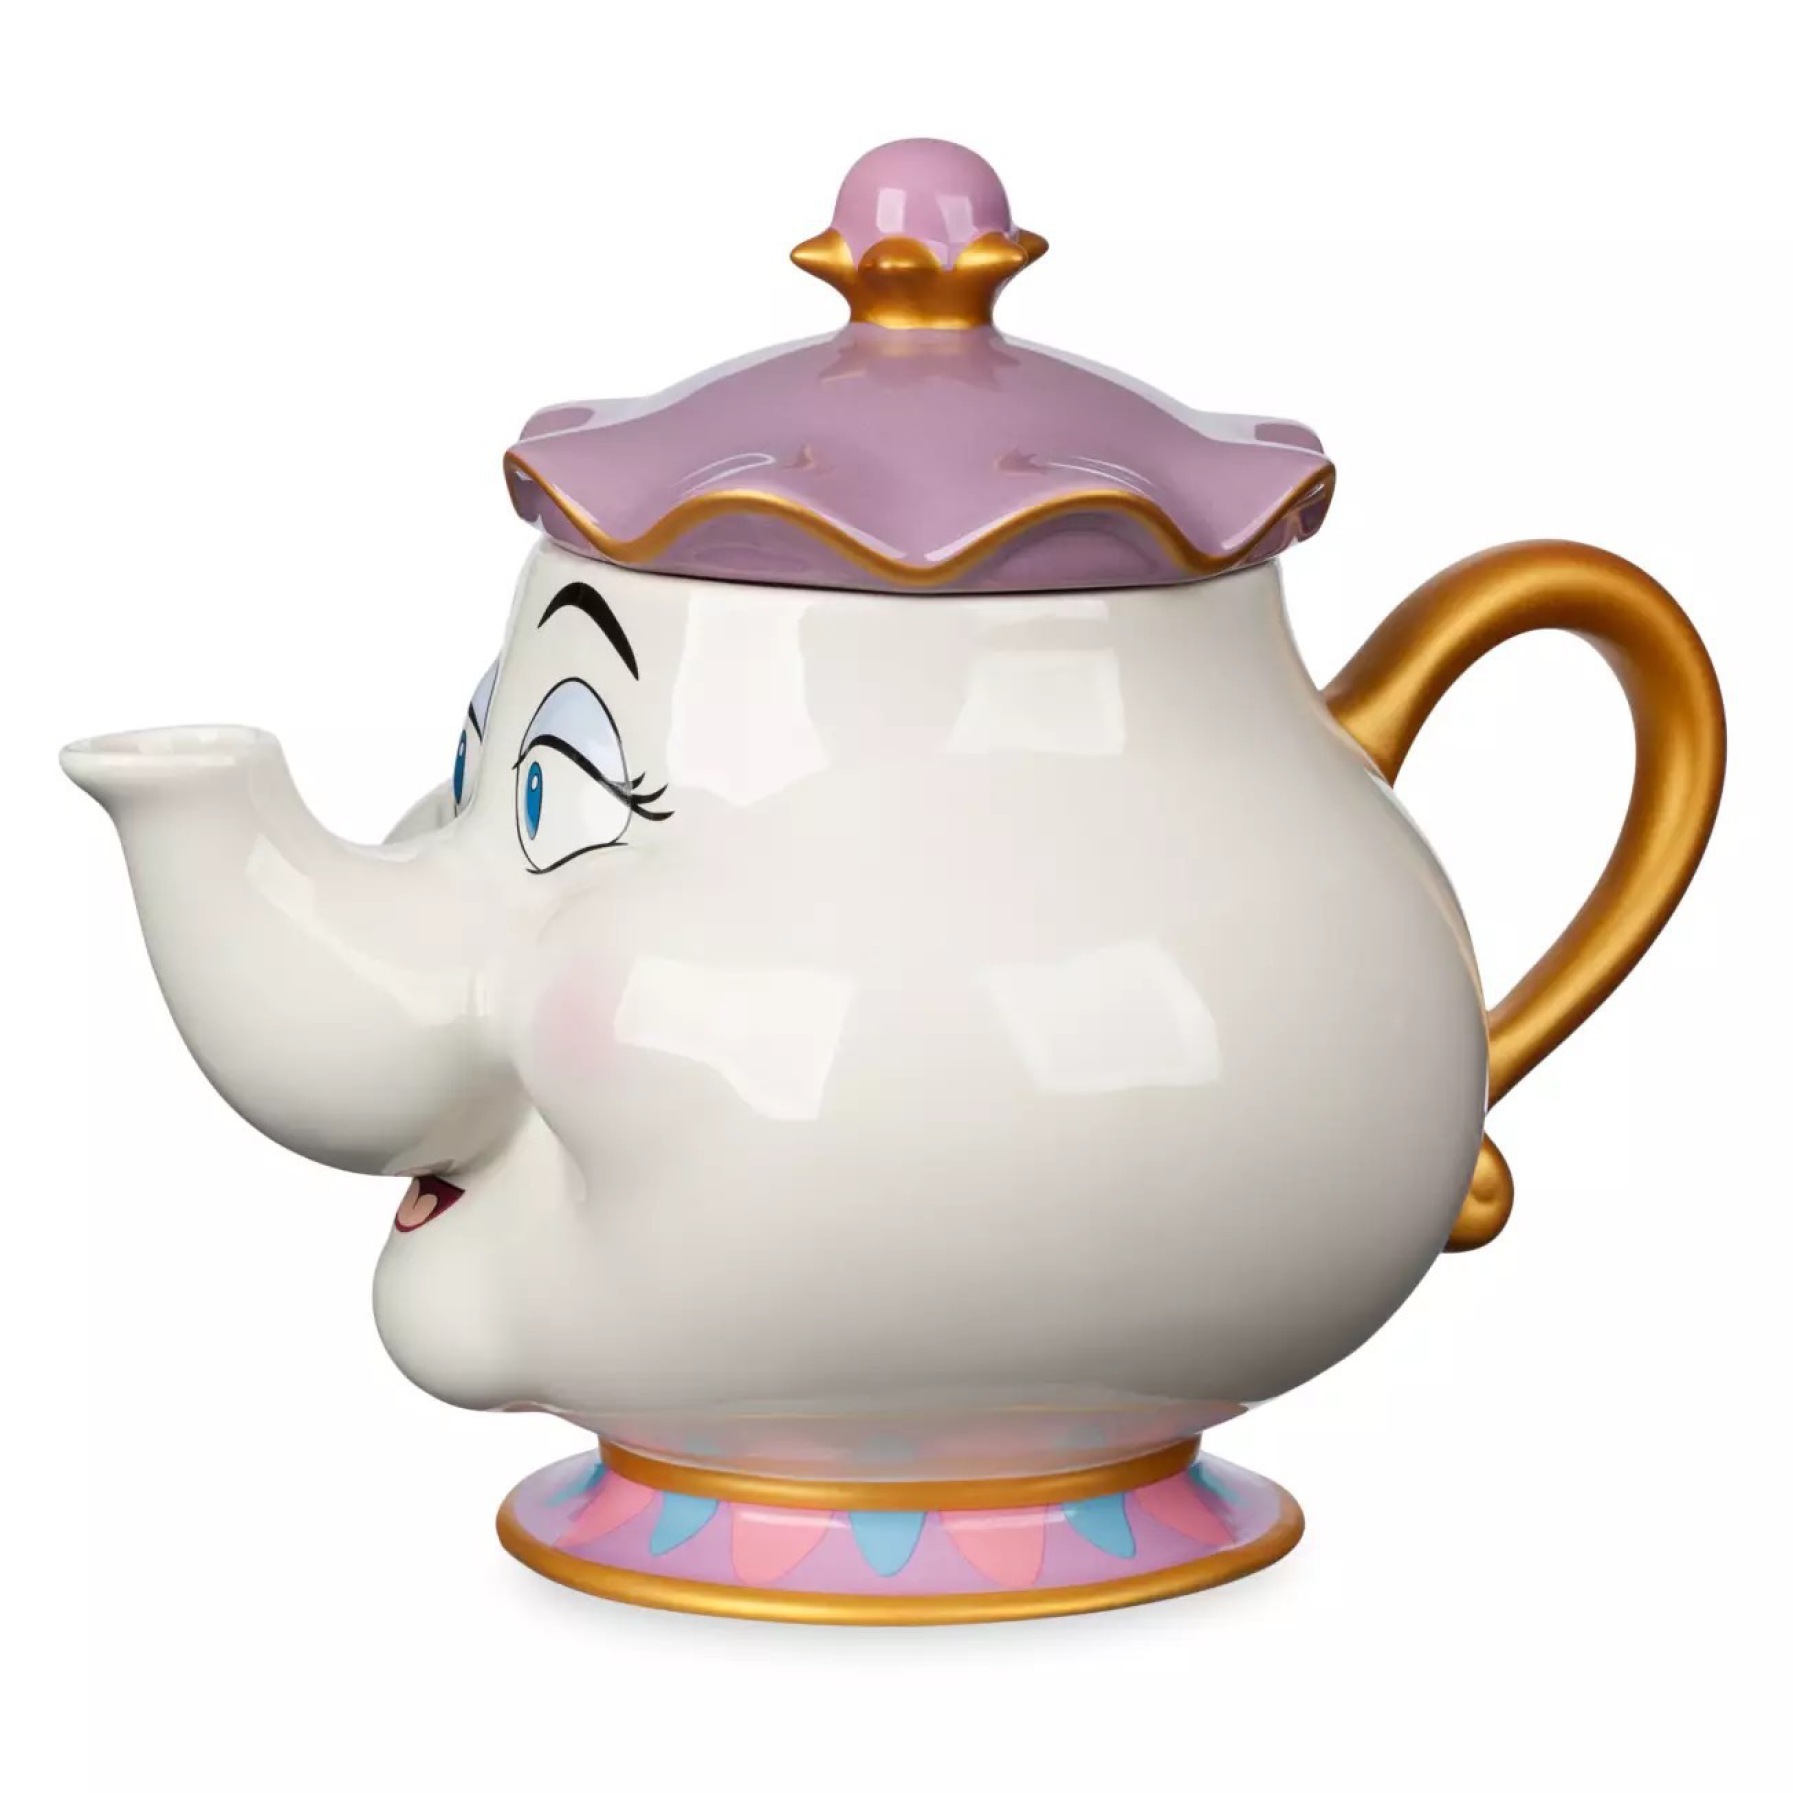  Disney Store Mrs Potts Teapot 